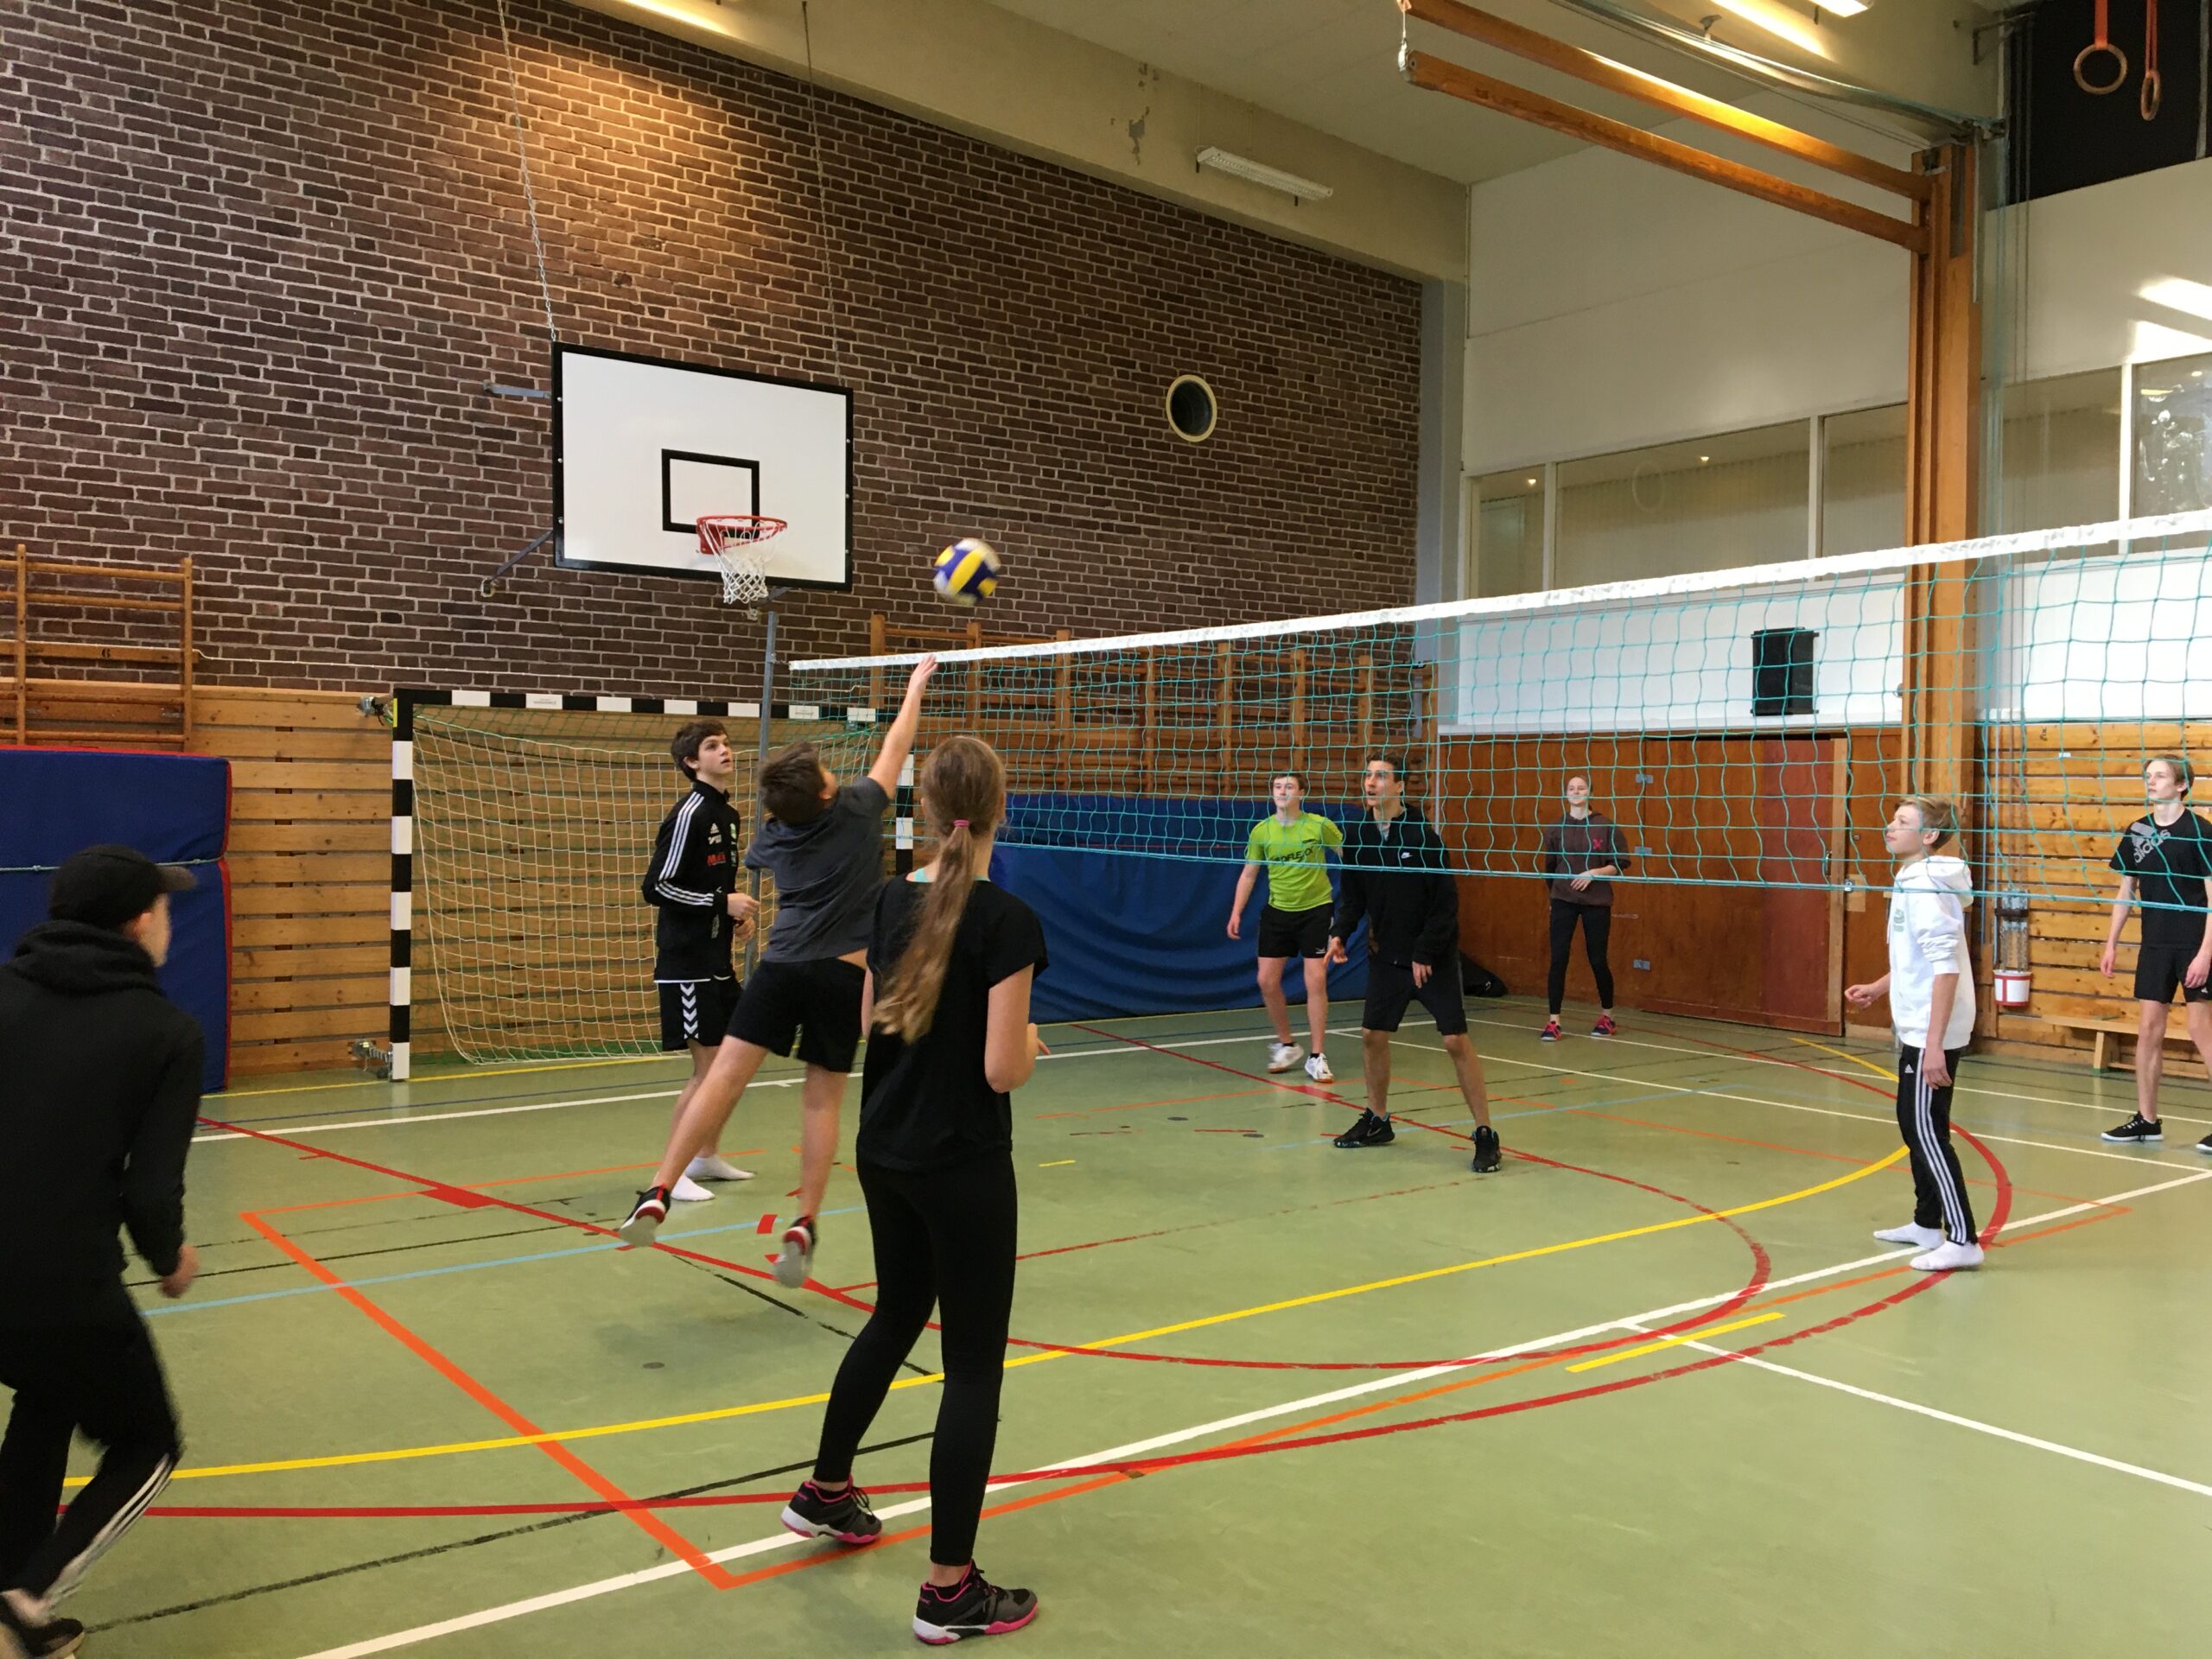 Skolelever som spelar volleyboll under idrottslektion